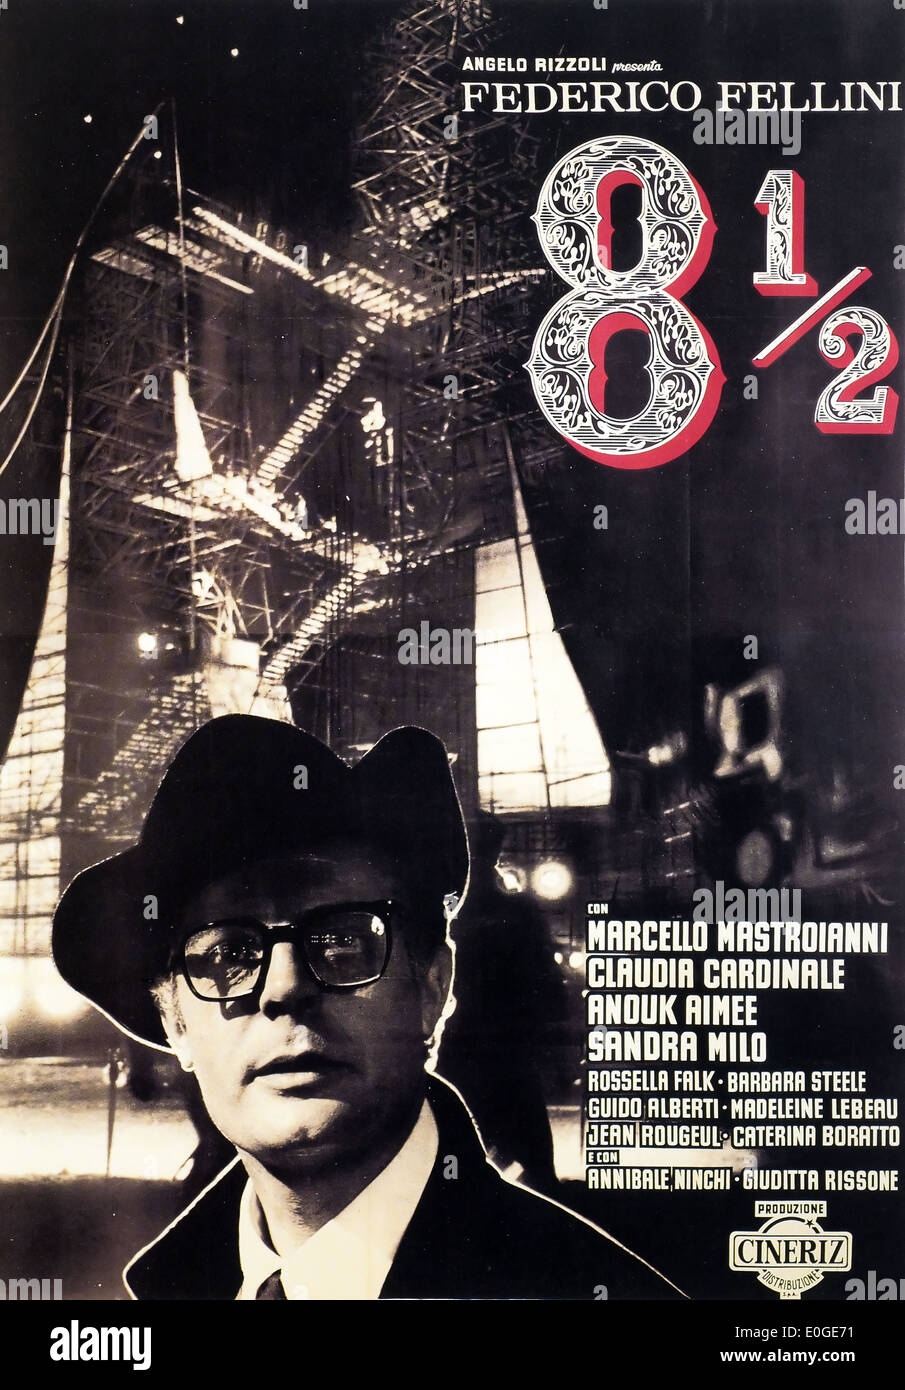 8 1/2 - Federico Fellini - originale italiano poster del filmato Foto Stock